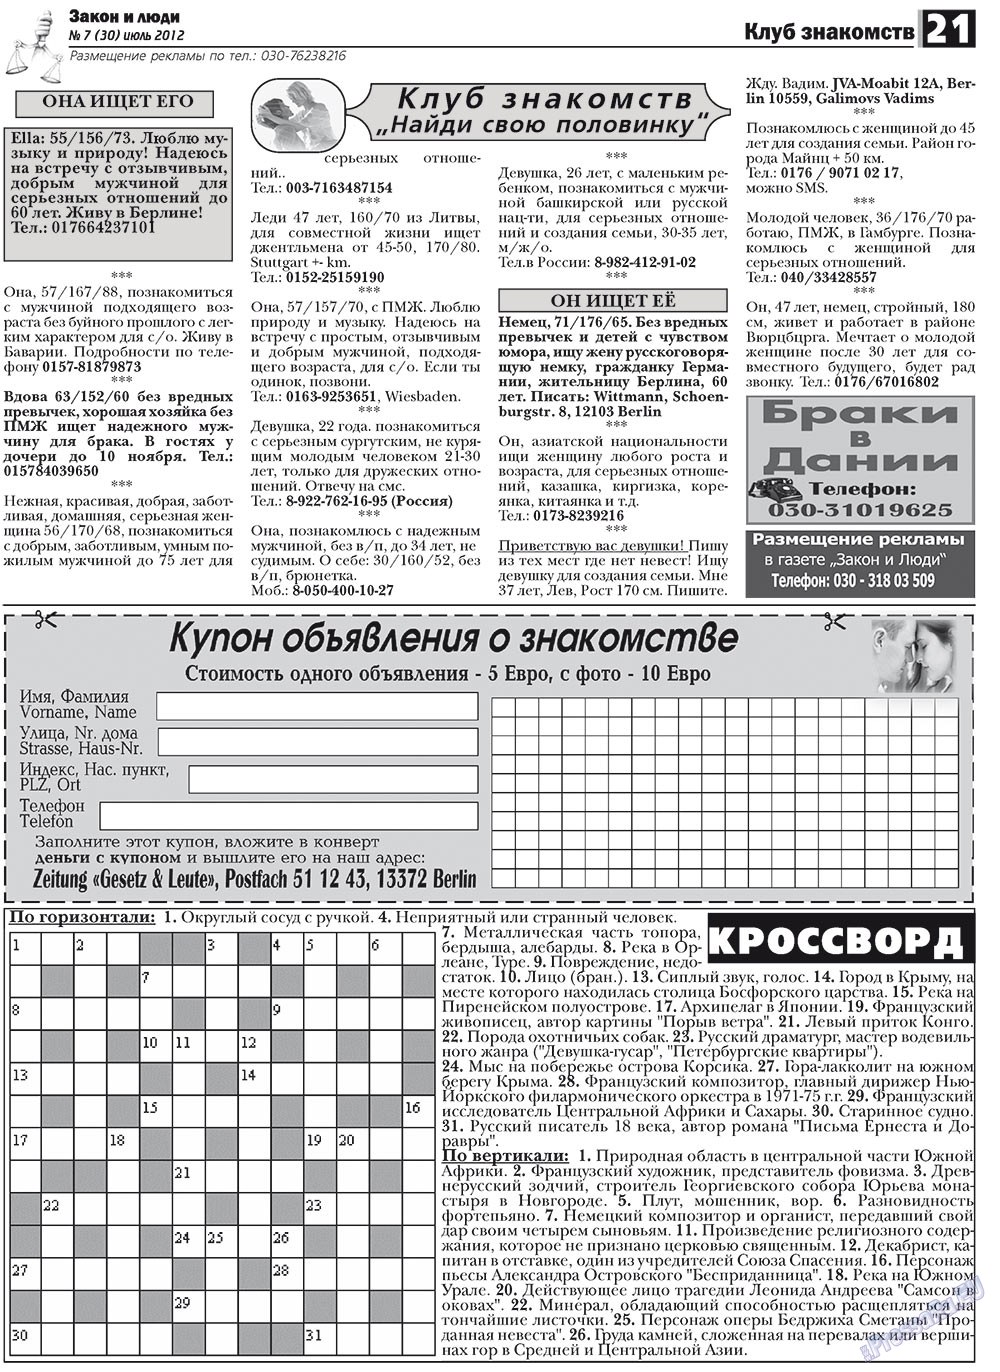 Закон и люди, газета. 2012 №7 стр.21